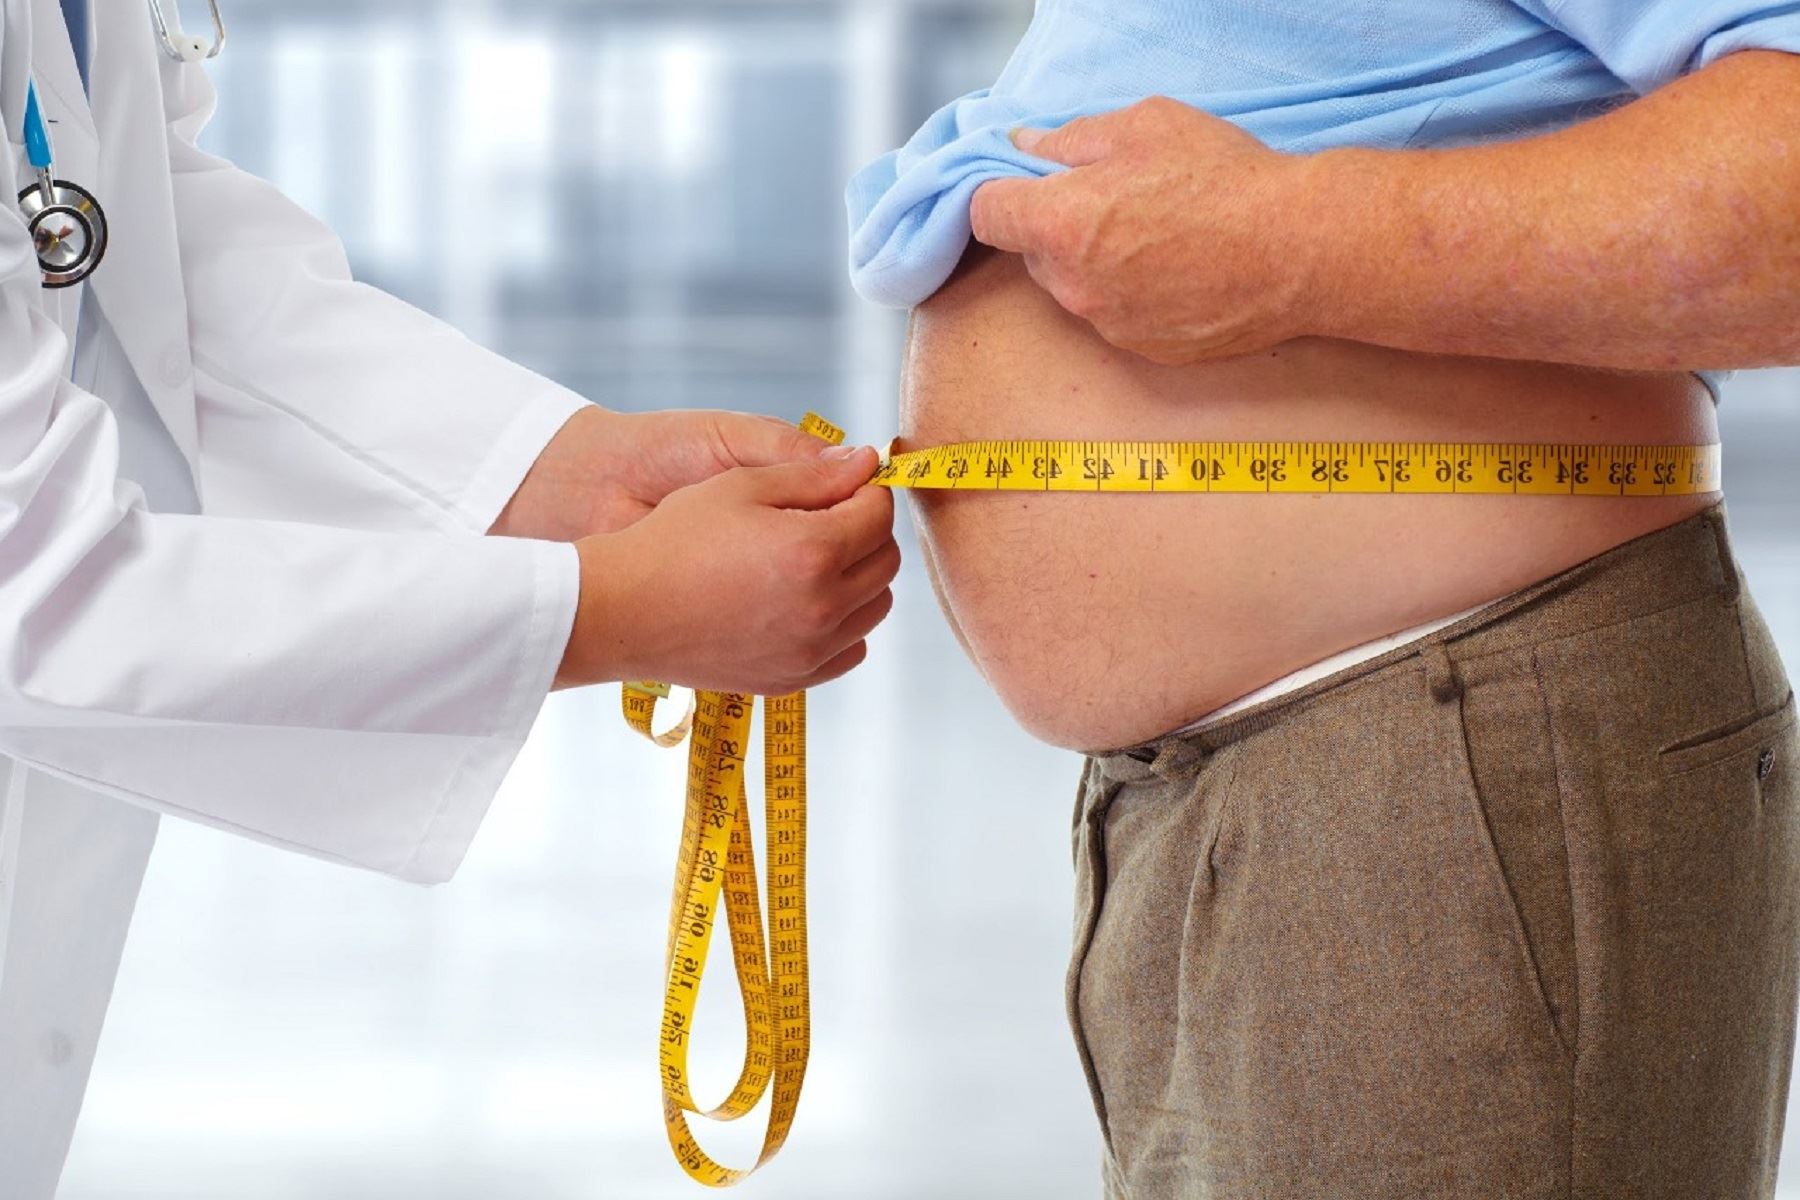 El sobrepeso y obesidad son factores de riesgo ante la covid-19. Especialista brinda recomendaciones para evitar exceso de peso y otras complicaciones. Foto: Difusión